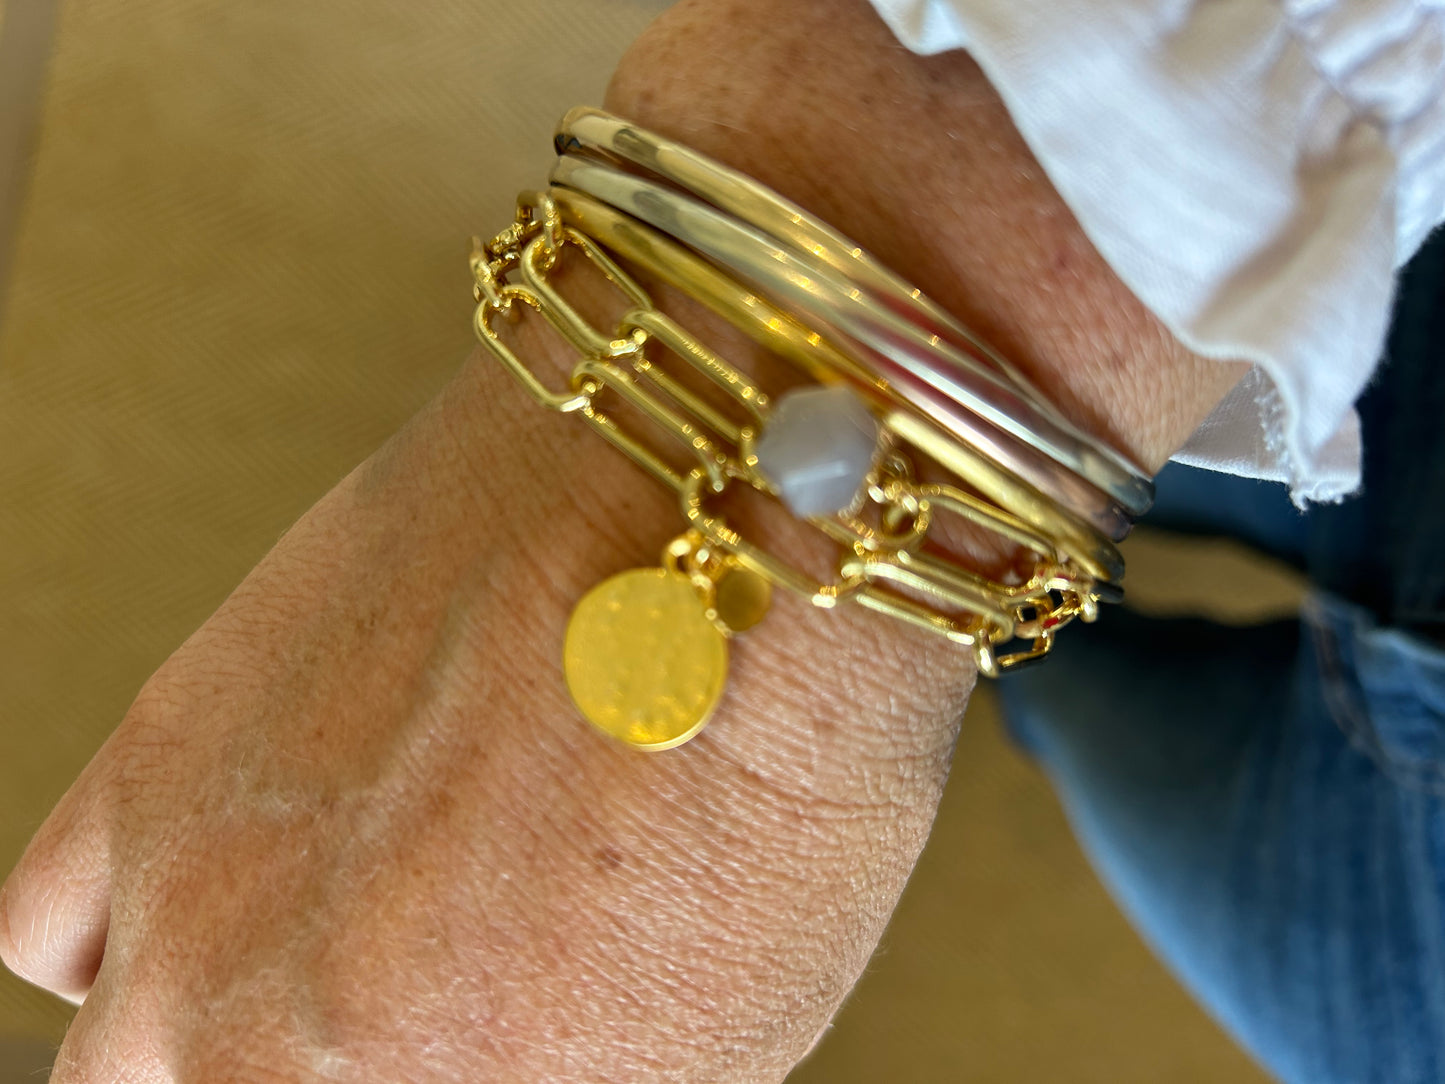 Gold plated paper clip chain bracelet with quartz pendant.